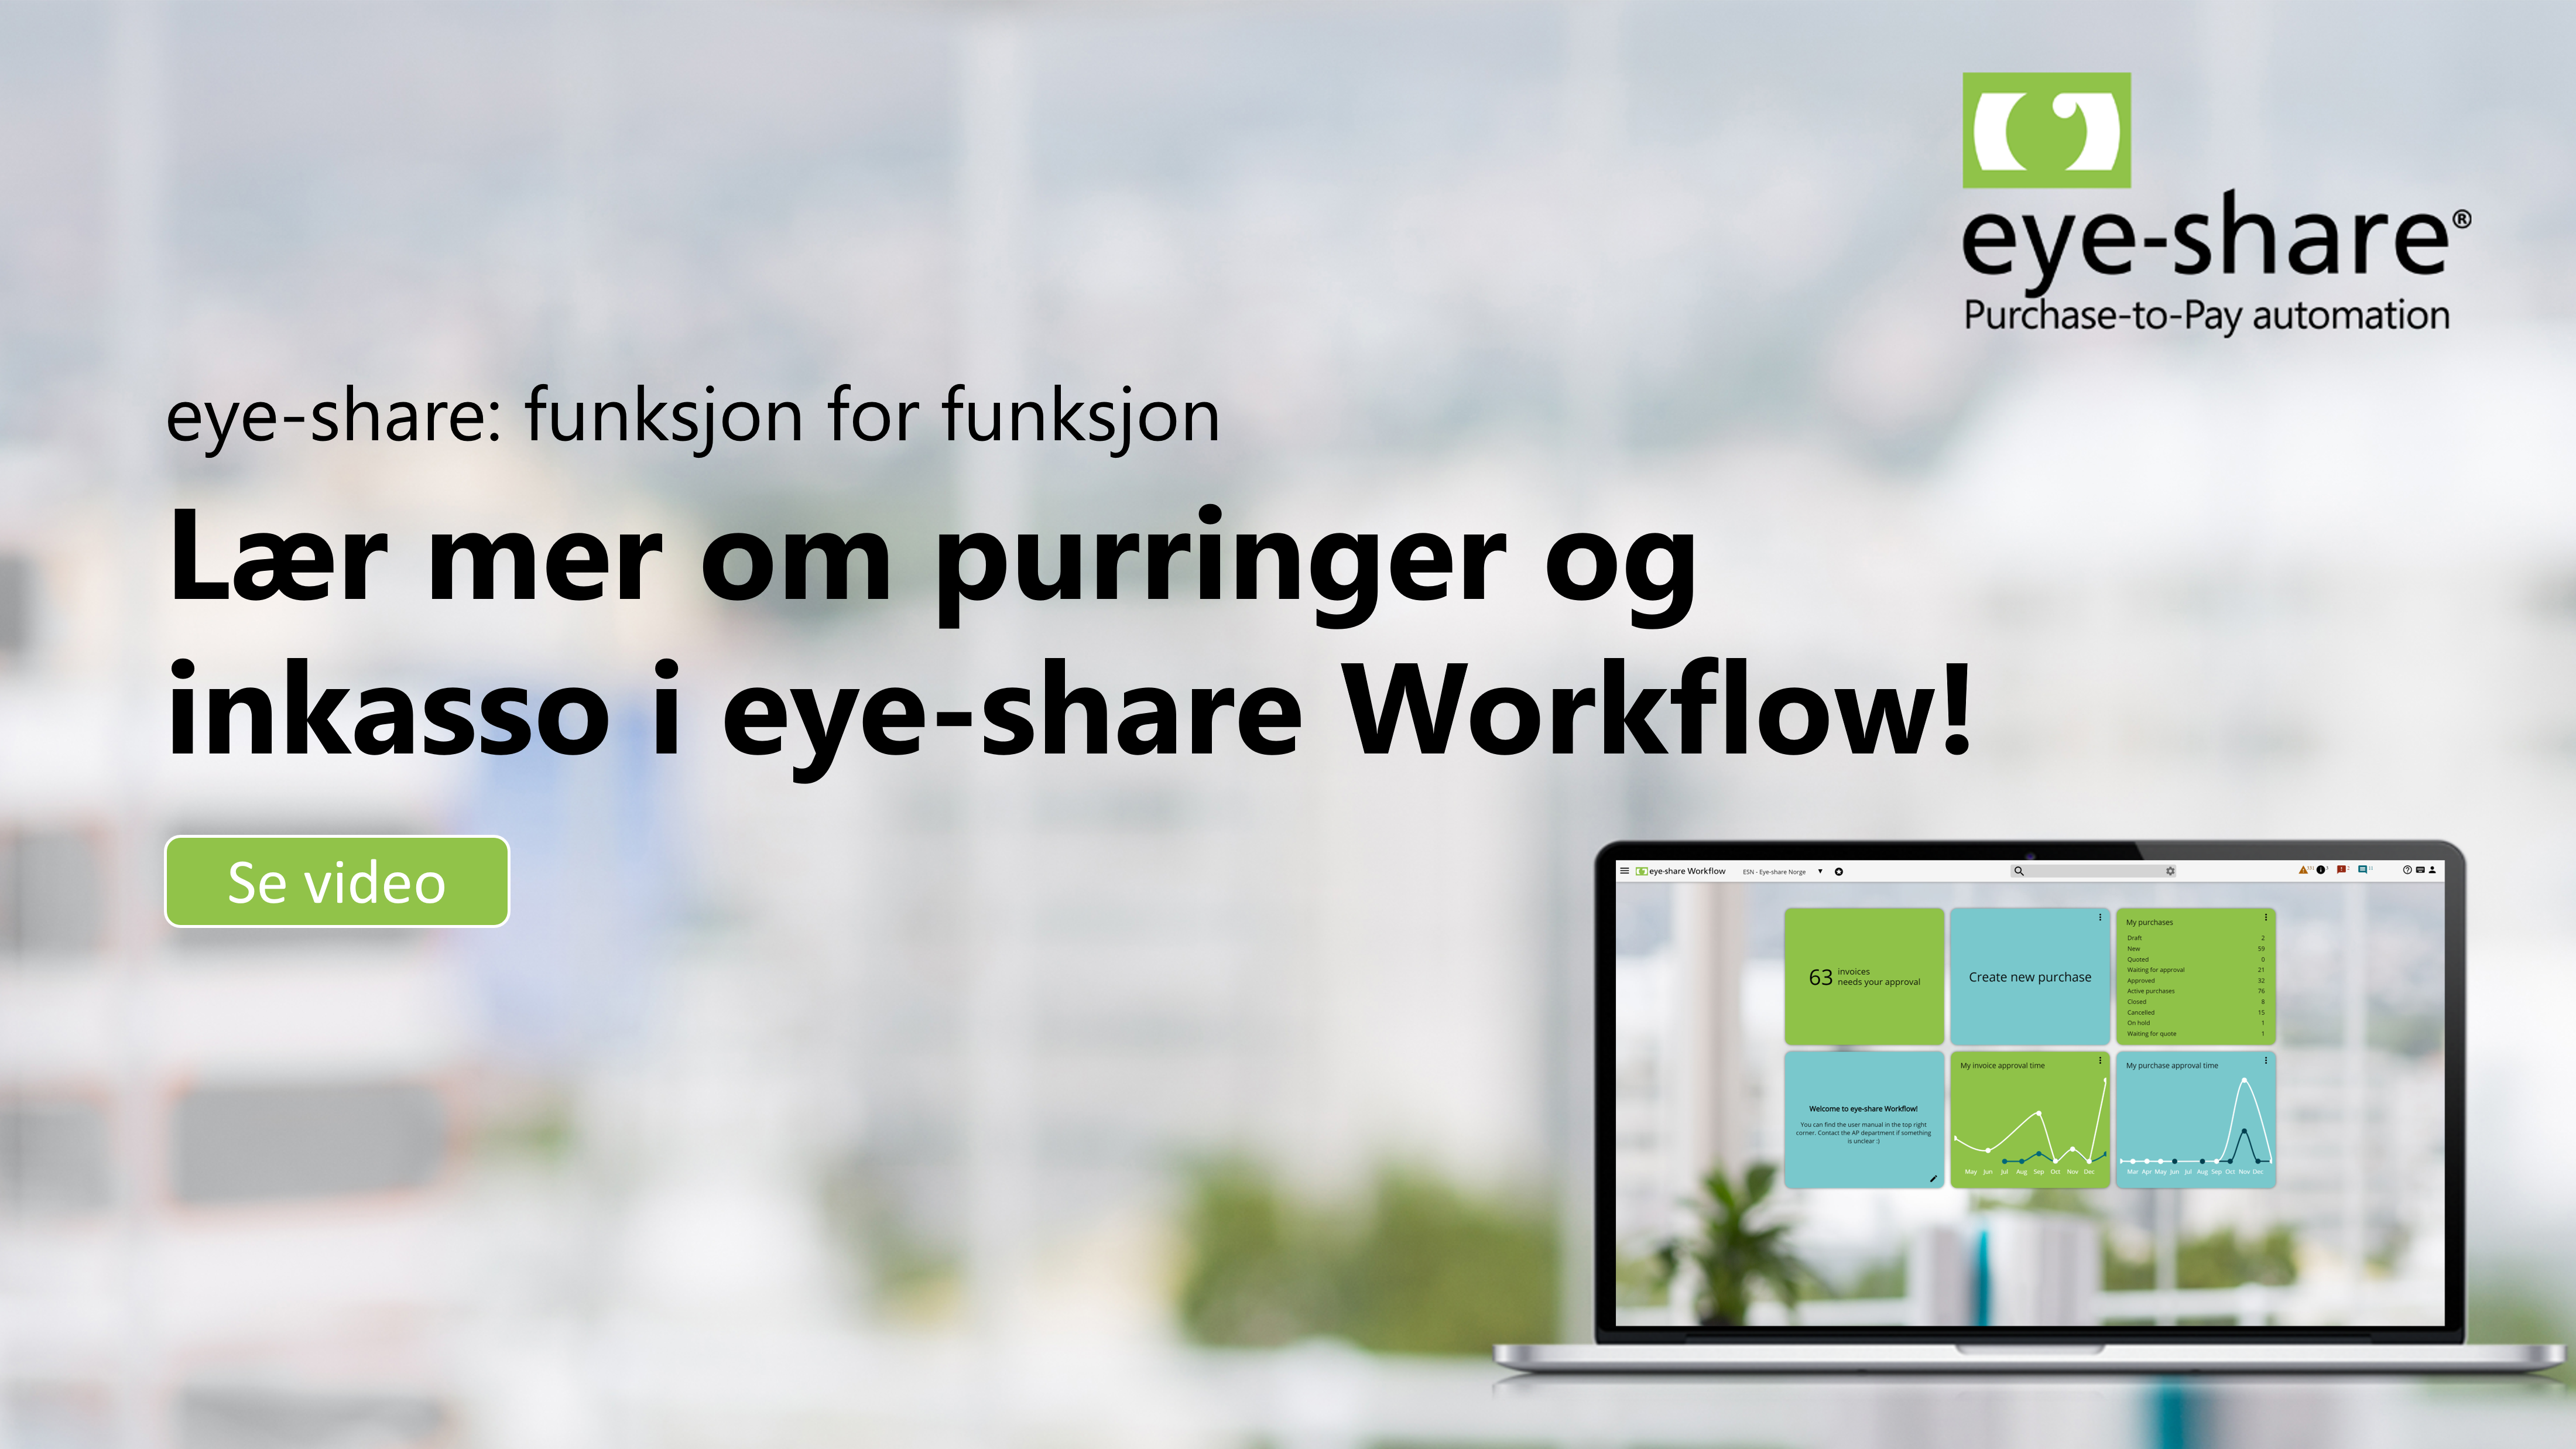 Thumbnail Purringer og inkasso eye-share Workflow funksjon for funksjon. Bilde av laptop som viser eye-share Workflow.